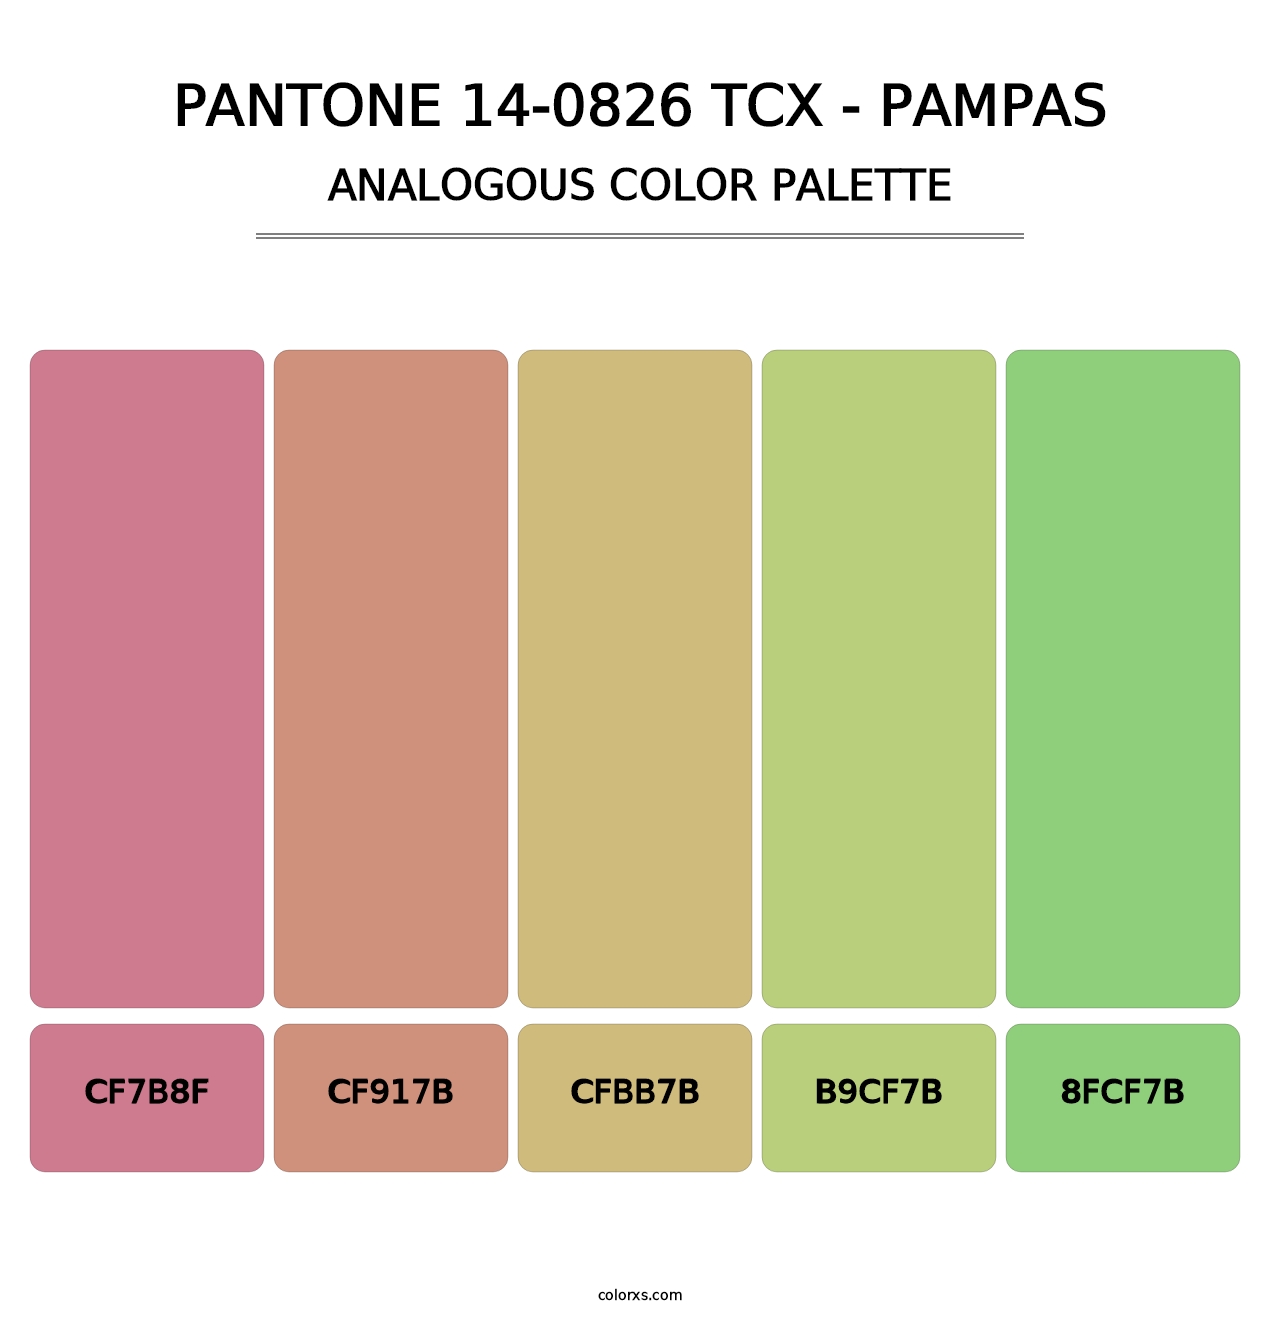 PANTONE 14-0826 TCX - Pampas - Analogous Color Palette